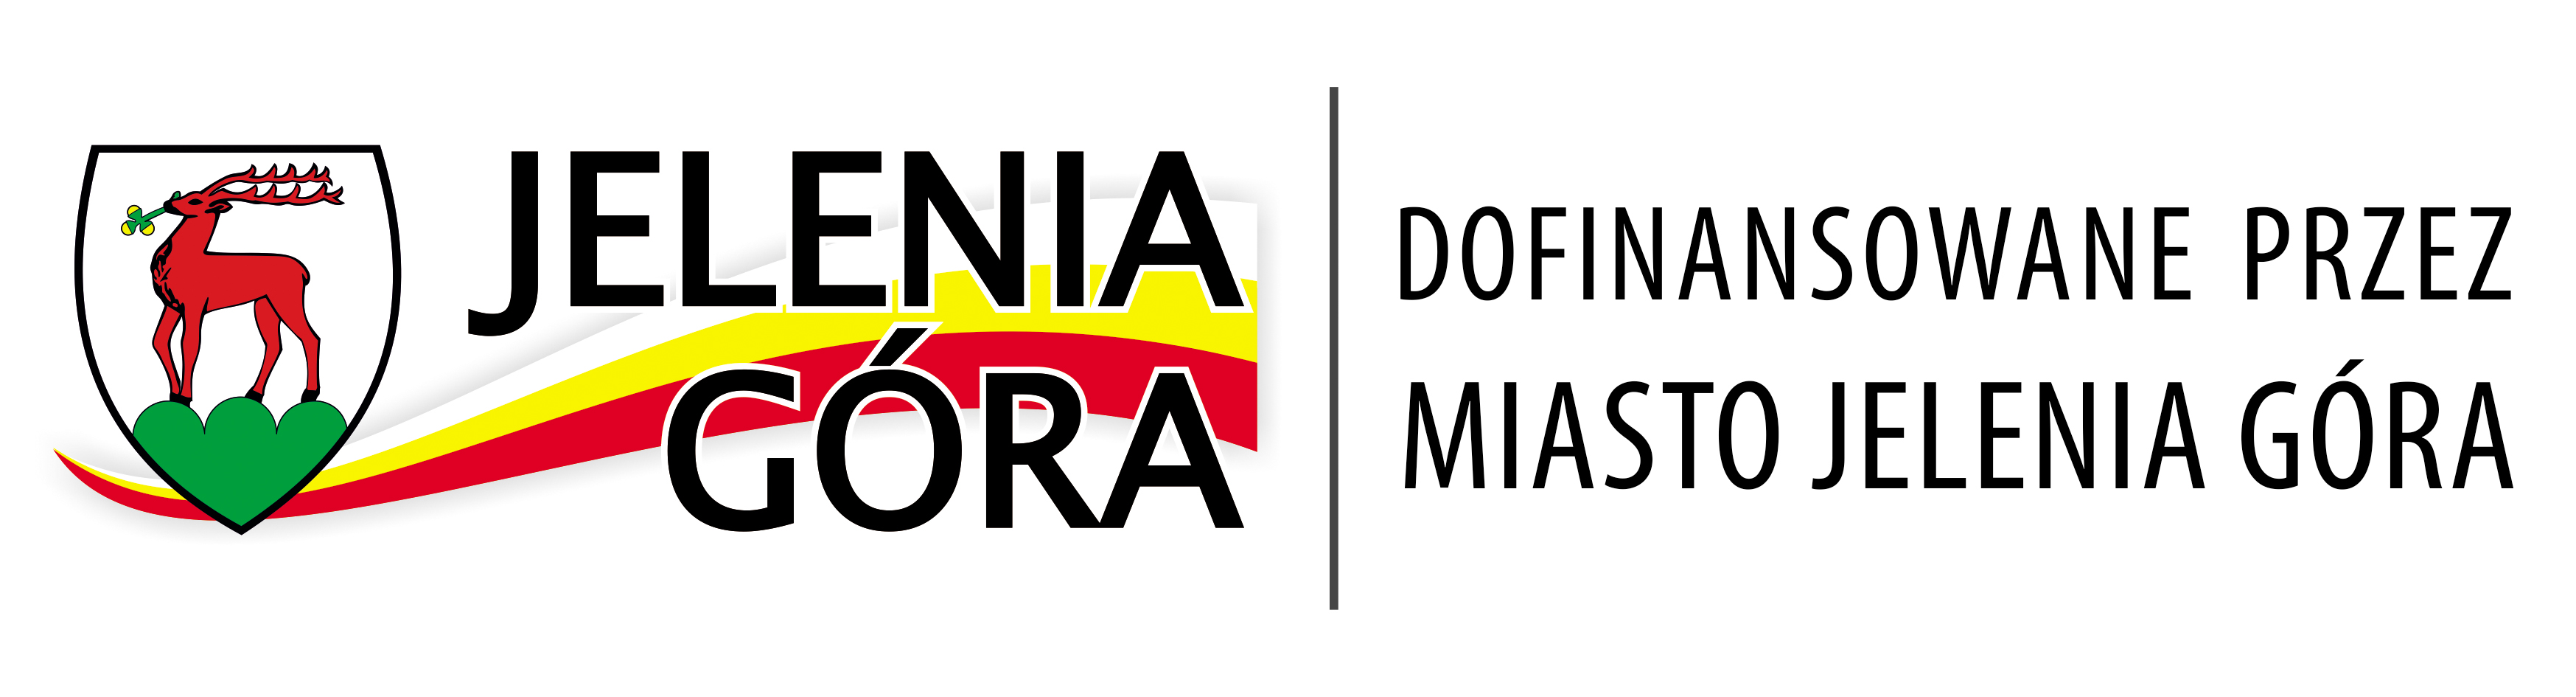 Jelenia Gora - Logo DOFINANSOWANE 2018